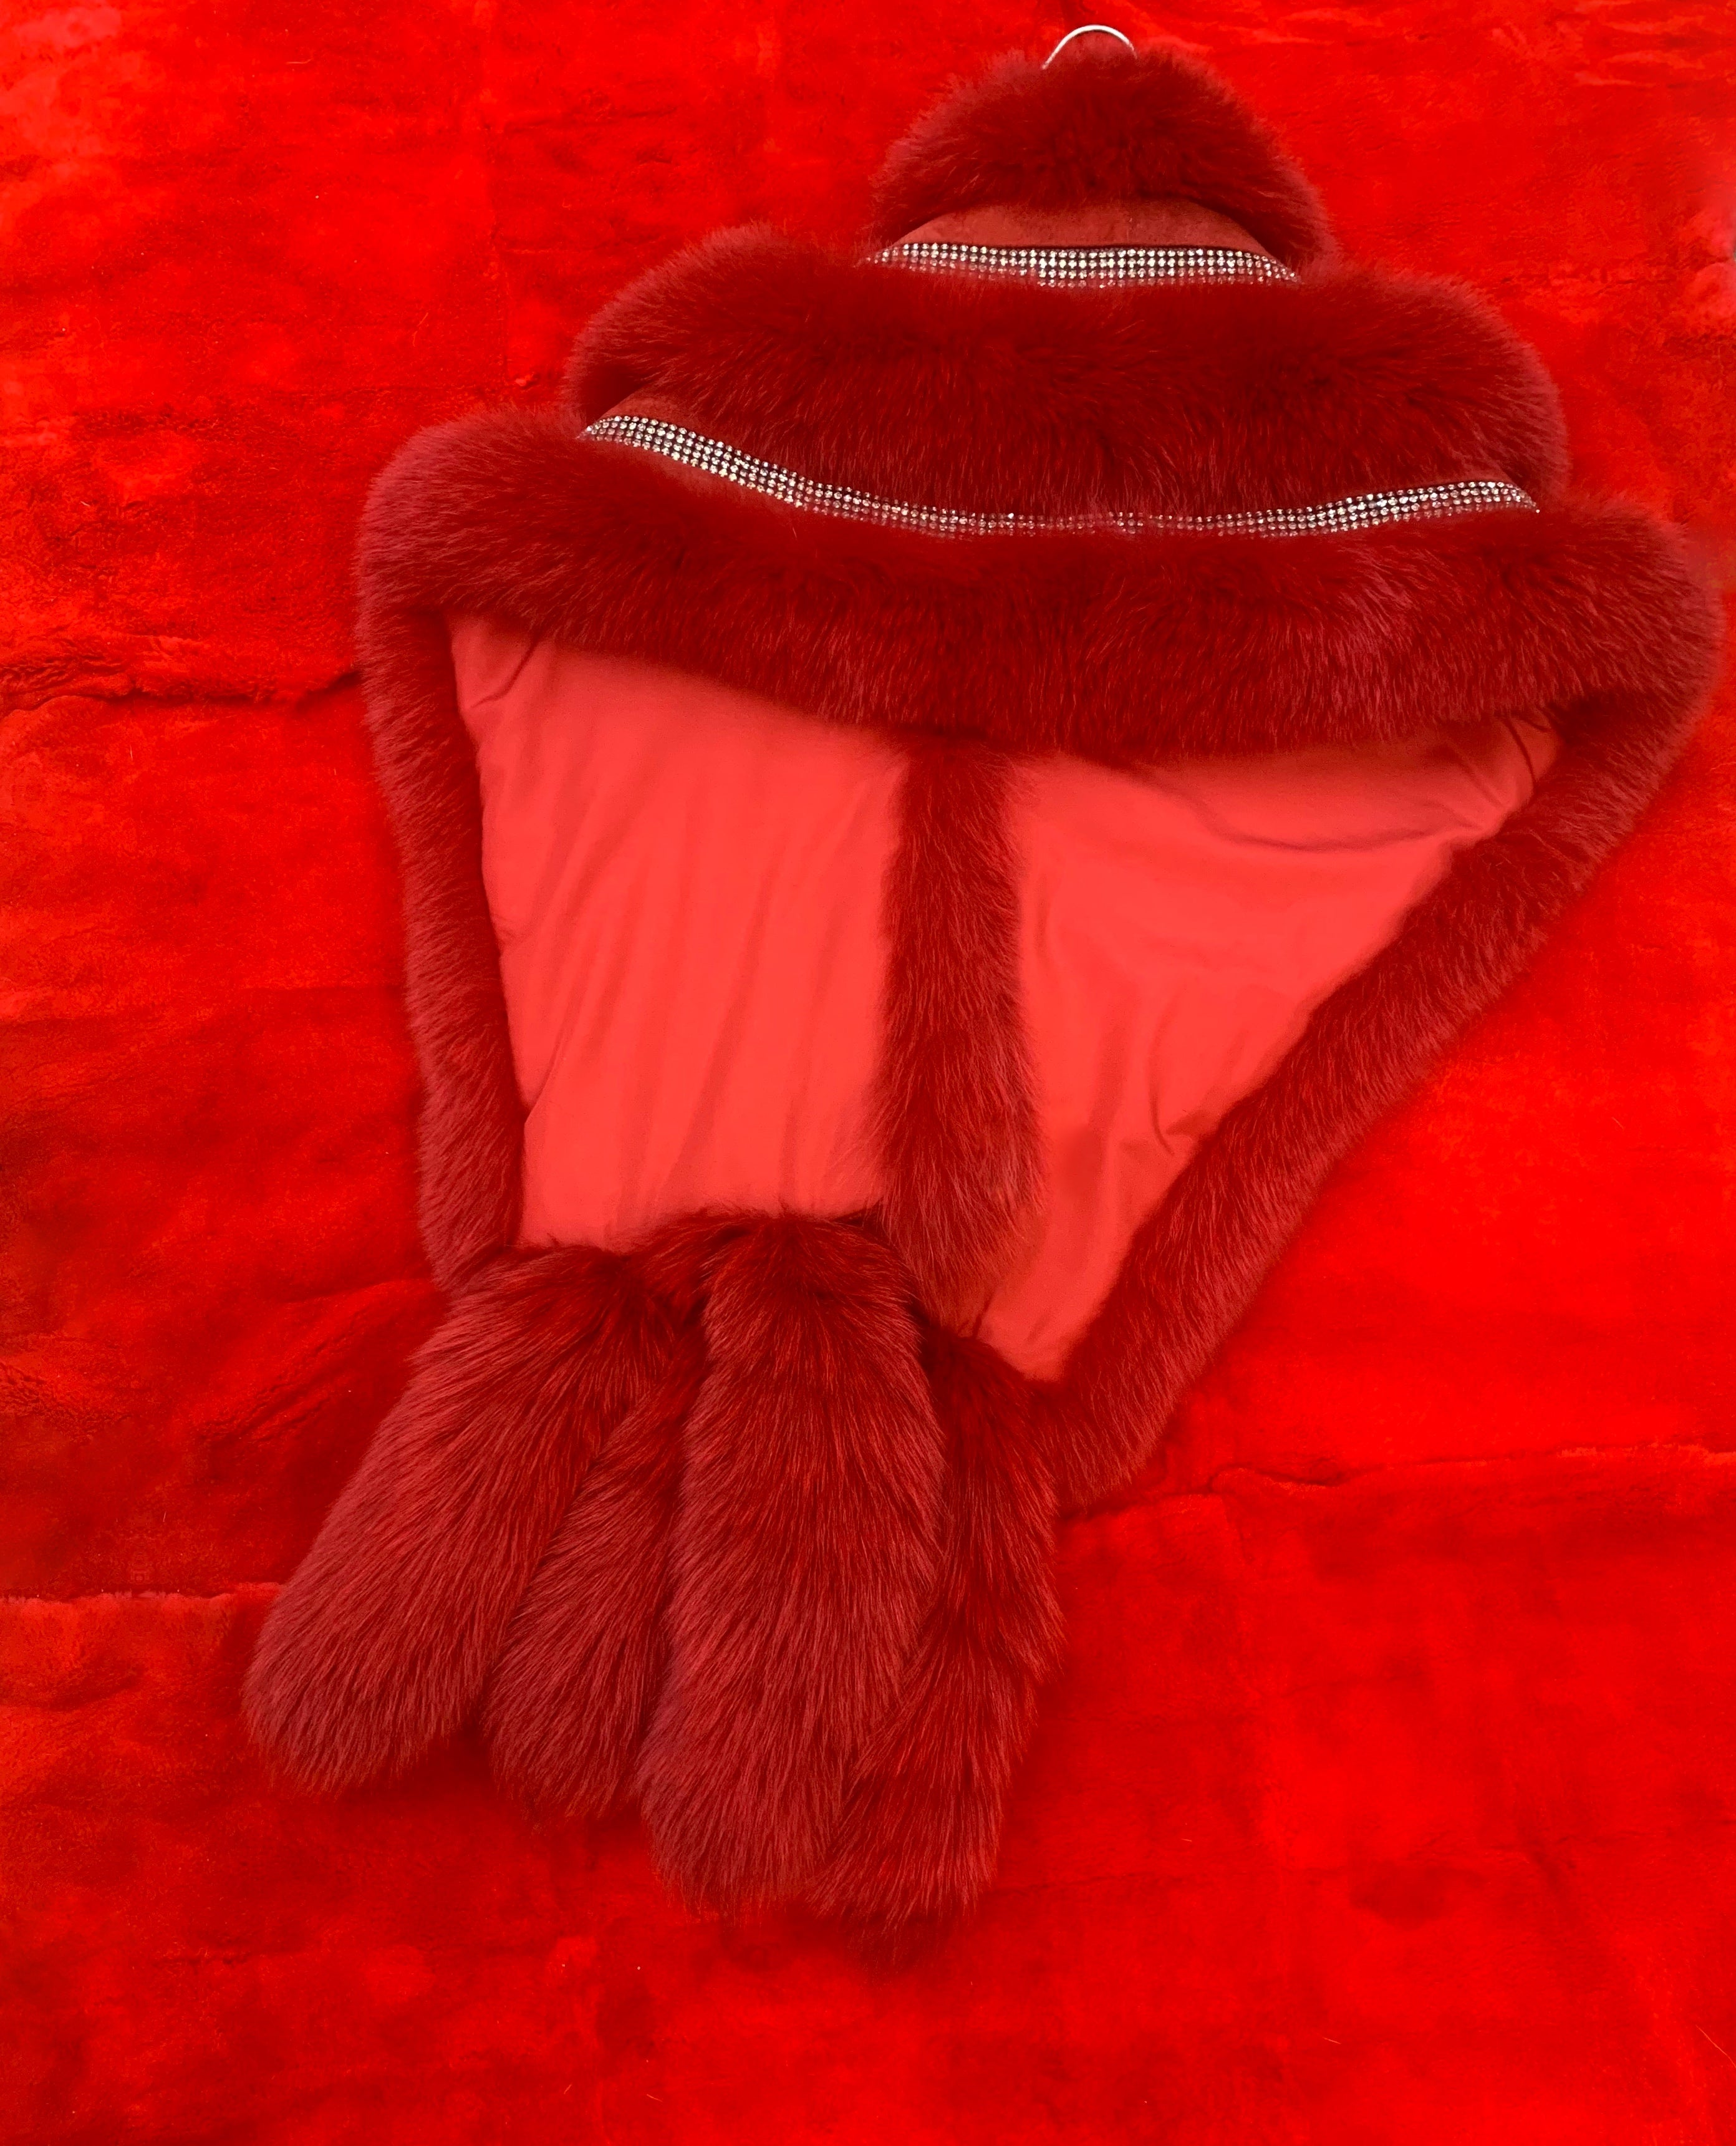 Fallon Aurielle “Fox Fur Rhinestone Boa” (Hot Pink, Black & Red)